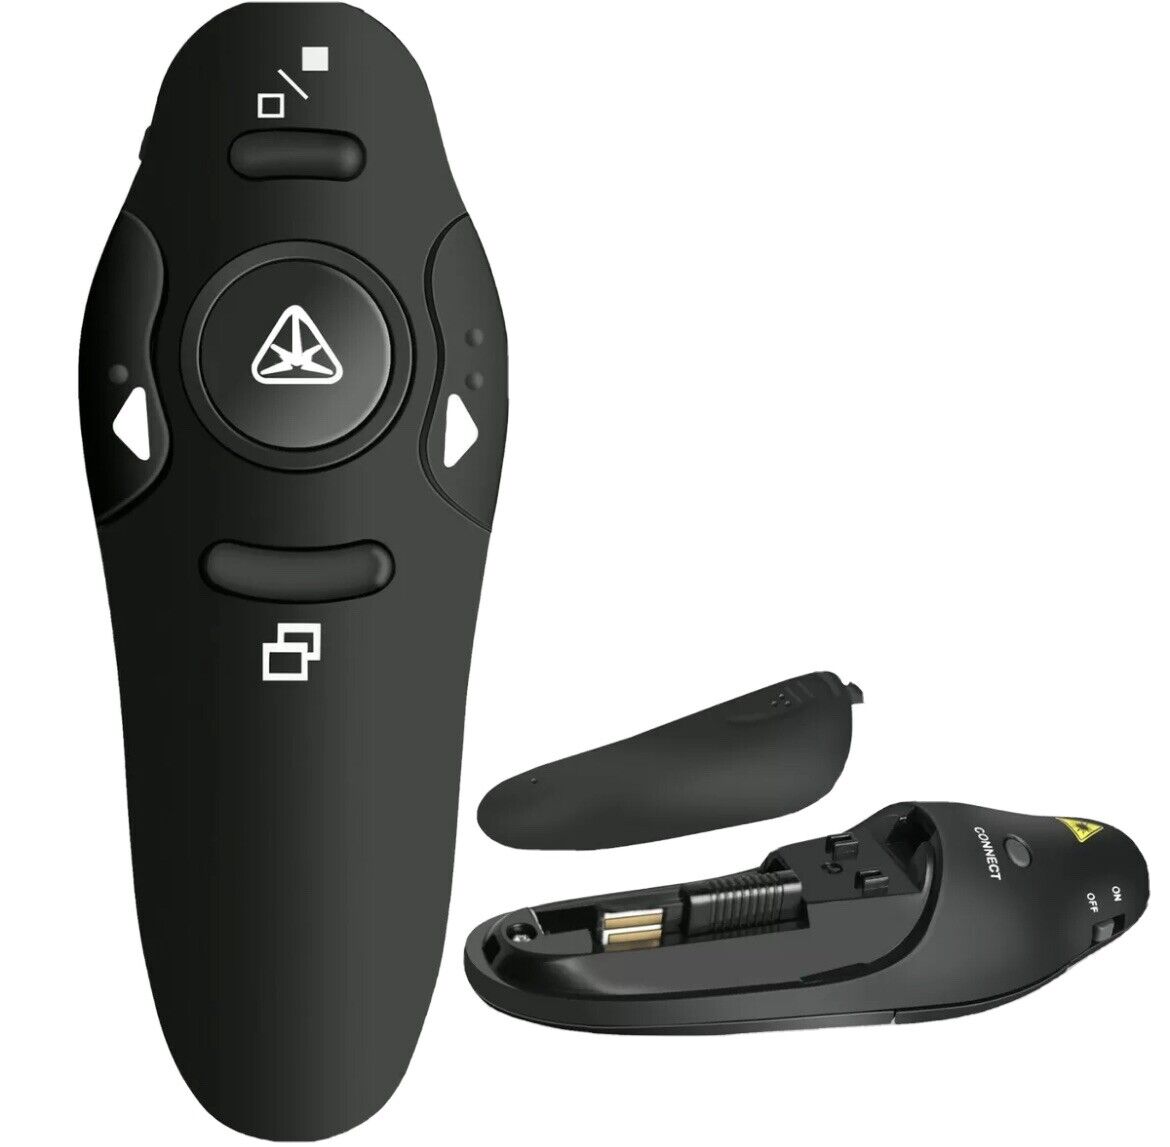 Power point Presentation Remote Wireless USB PPT Presenter Laser PointerClicker